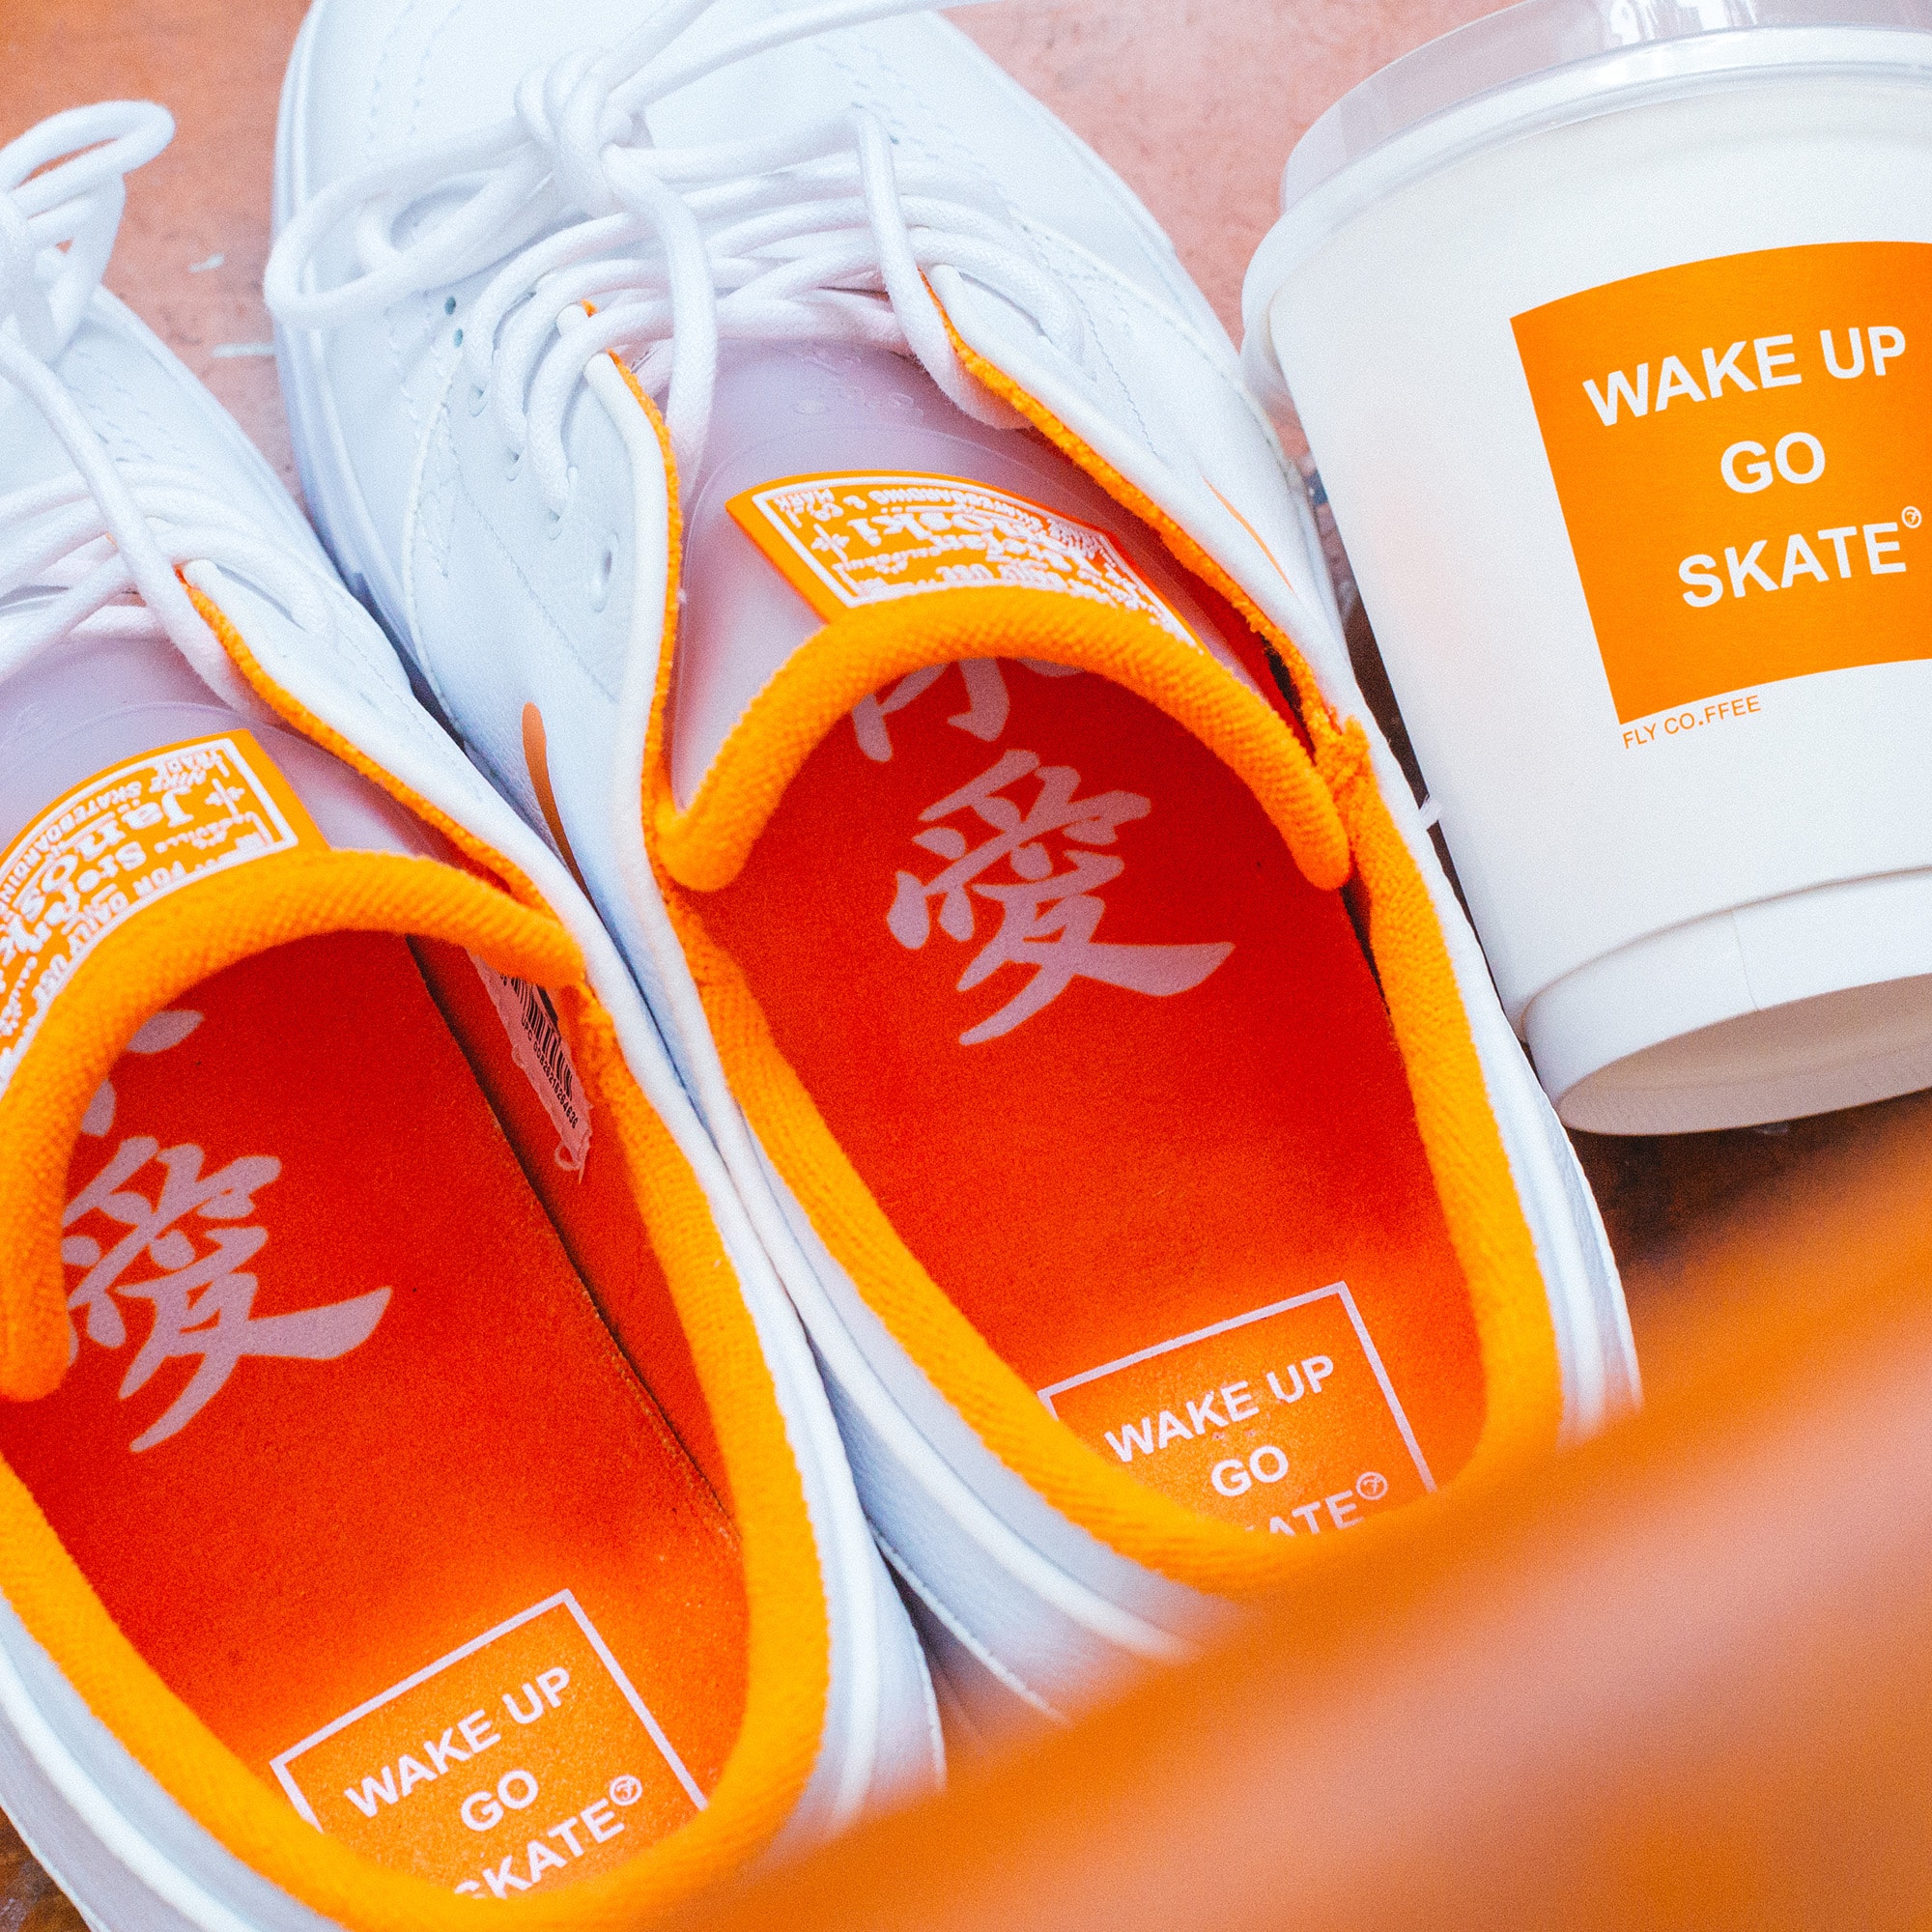 FLY x Nike SB 全新聯乘鞋款 Zoom Janoski「WAKE UP GO SKATE」登場